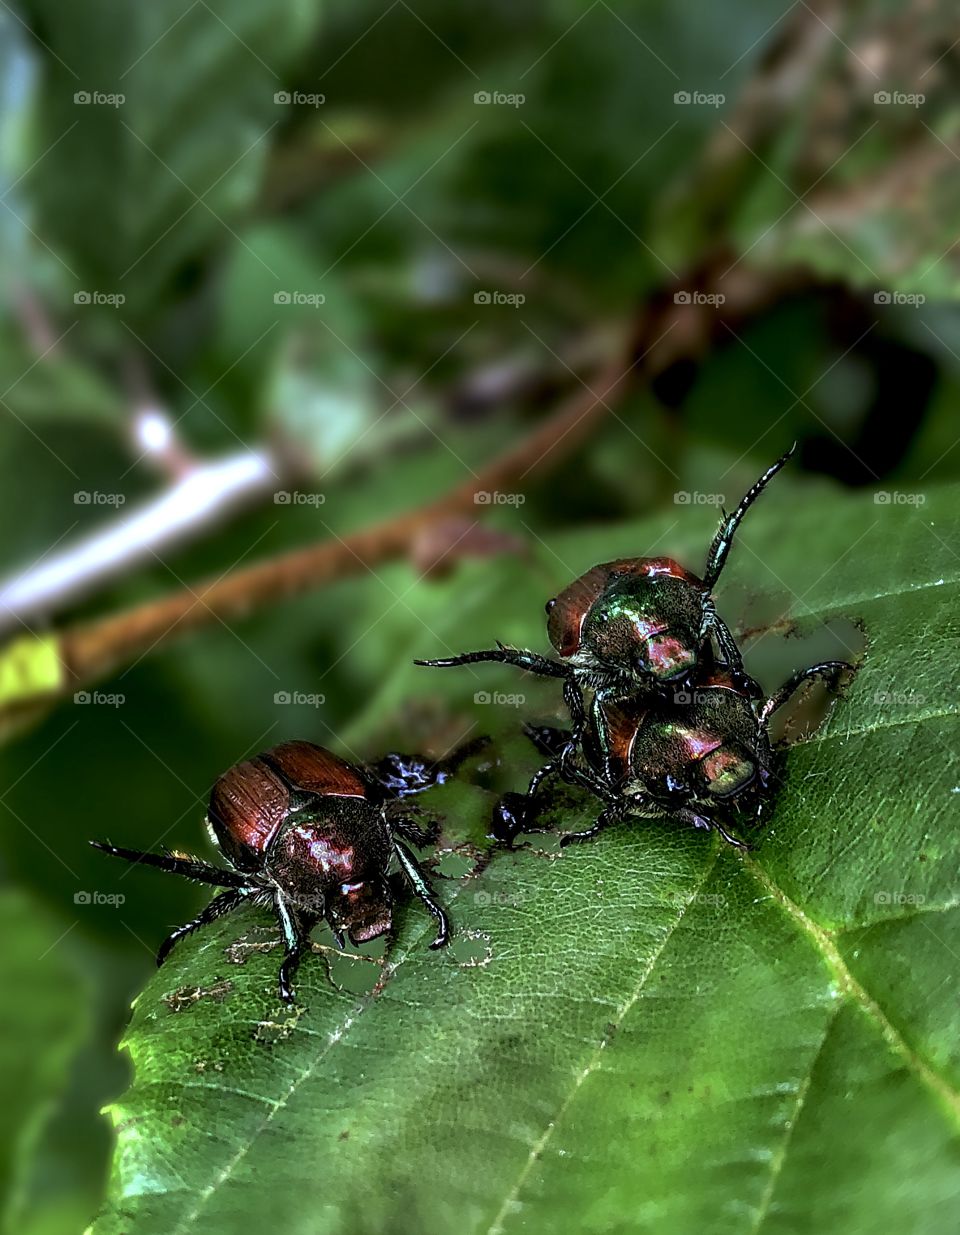 Beetlemania